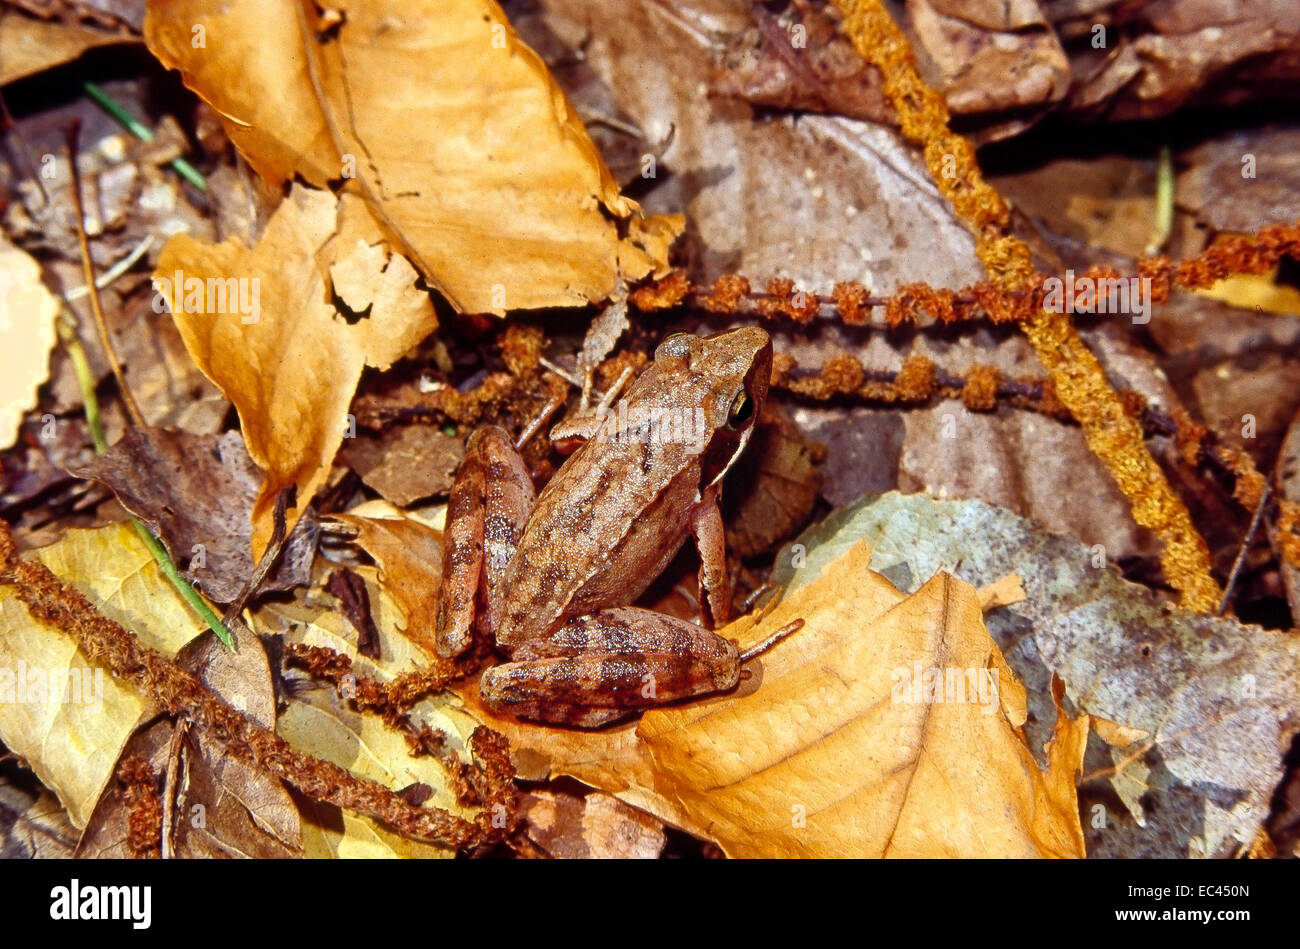 Mimetismo - Italiano rana ágil (Rana latastei) camuflado entre la hojarasca de hojas caídas en el sotobosque Foto de stock